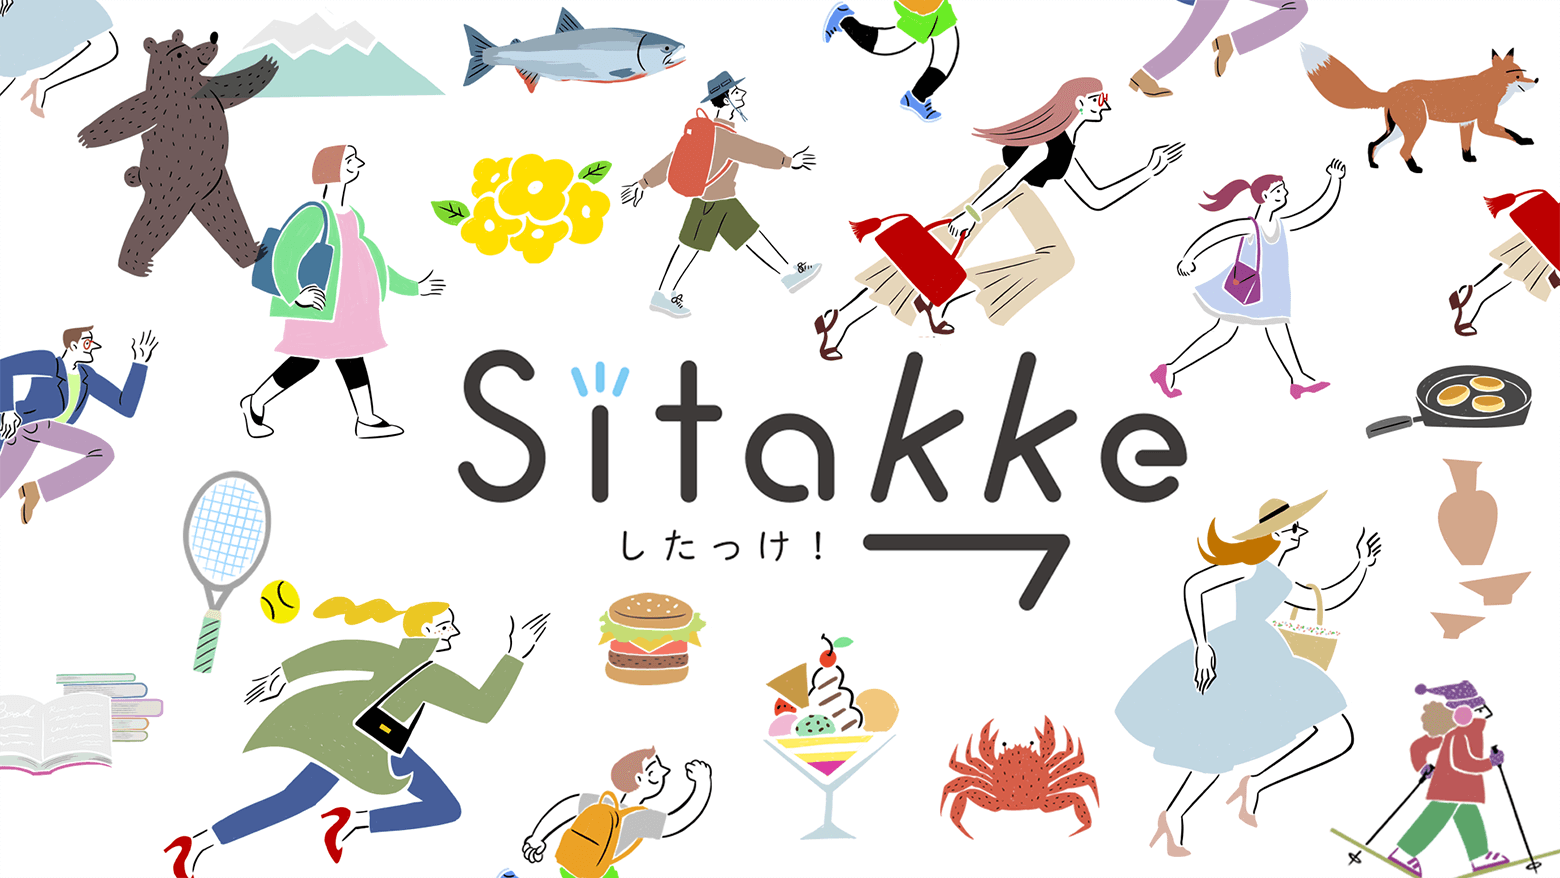 女性のためのローカルプラットフォーム『Sitakke』